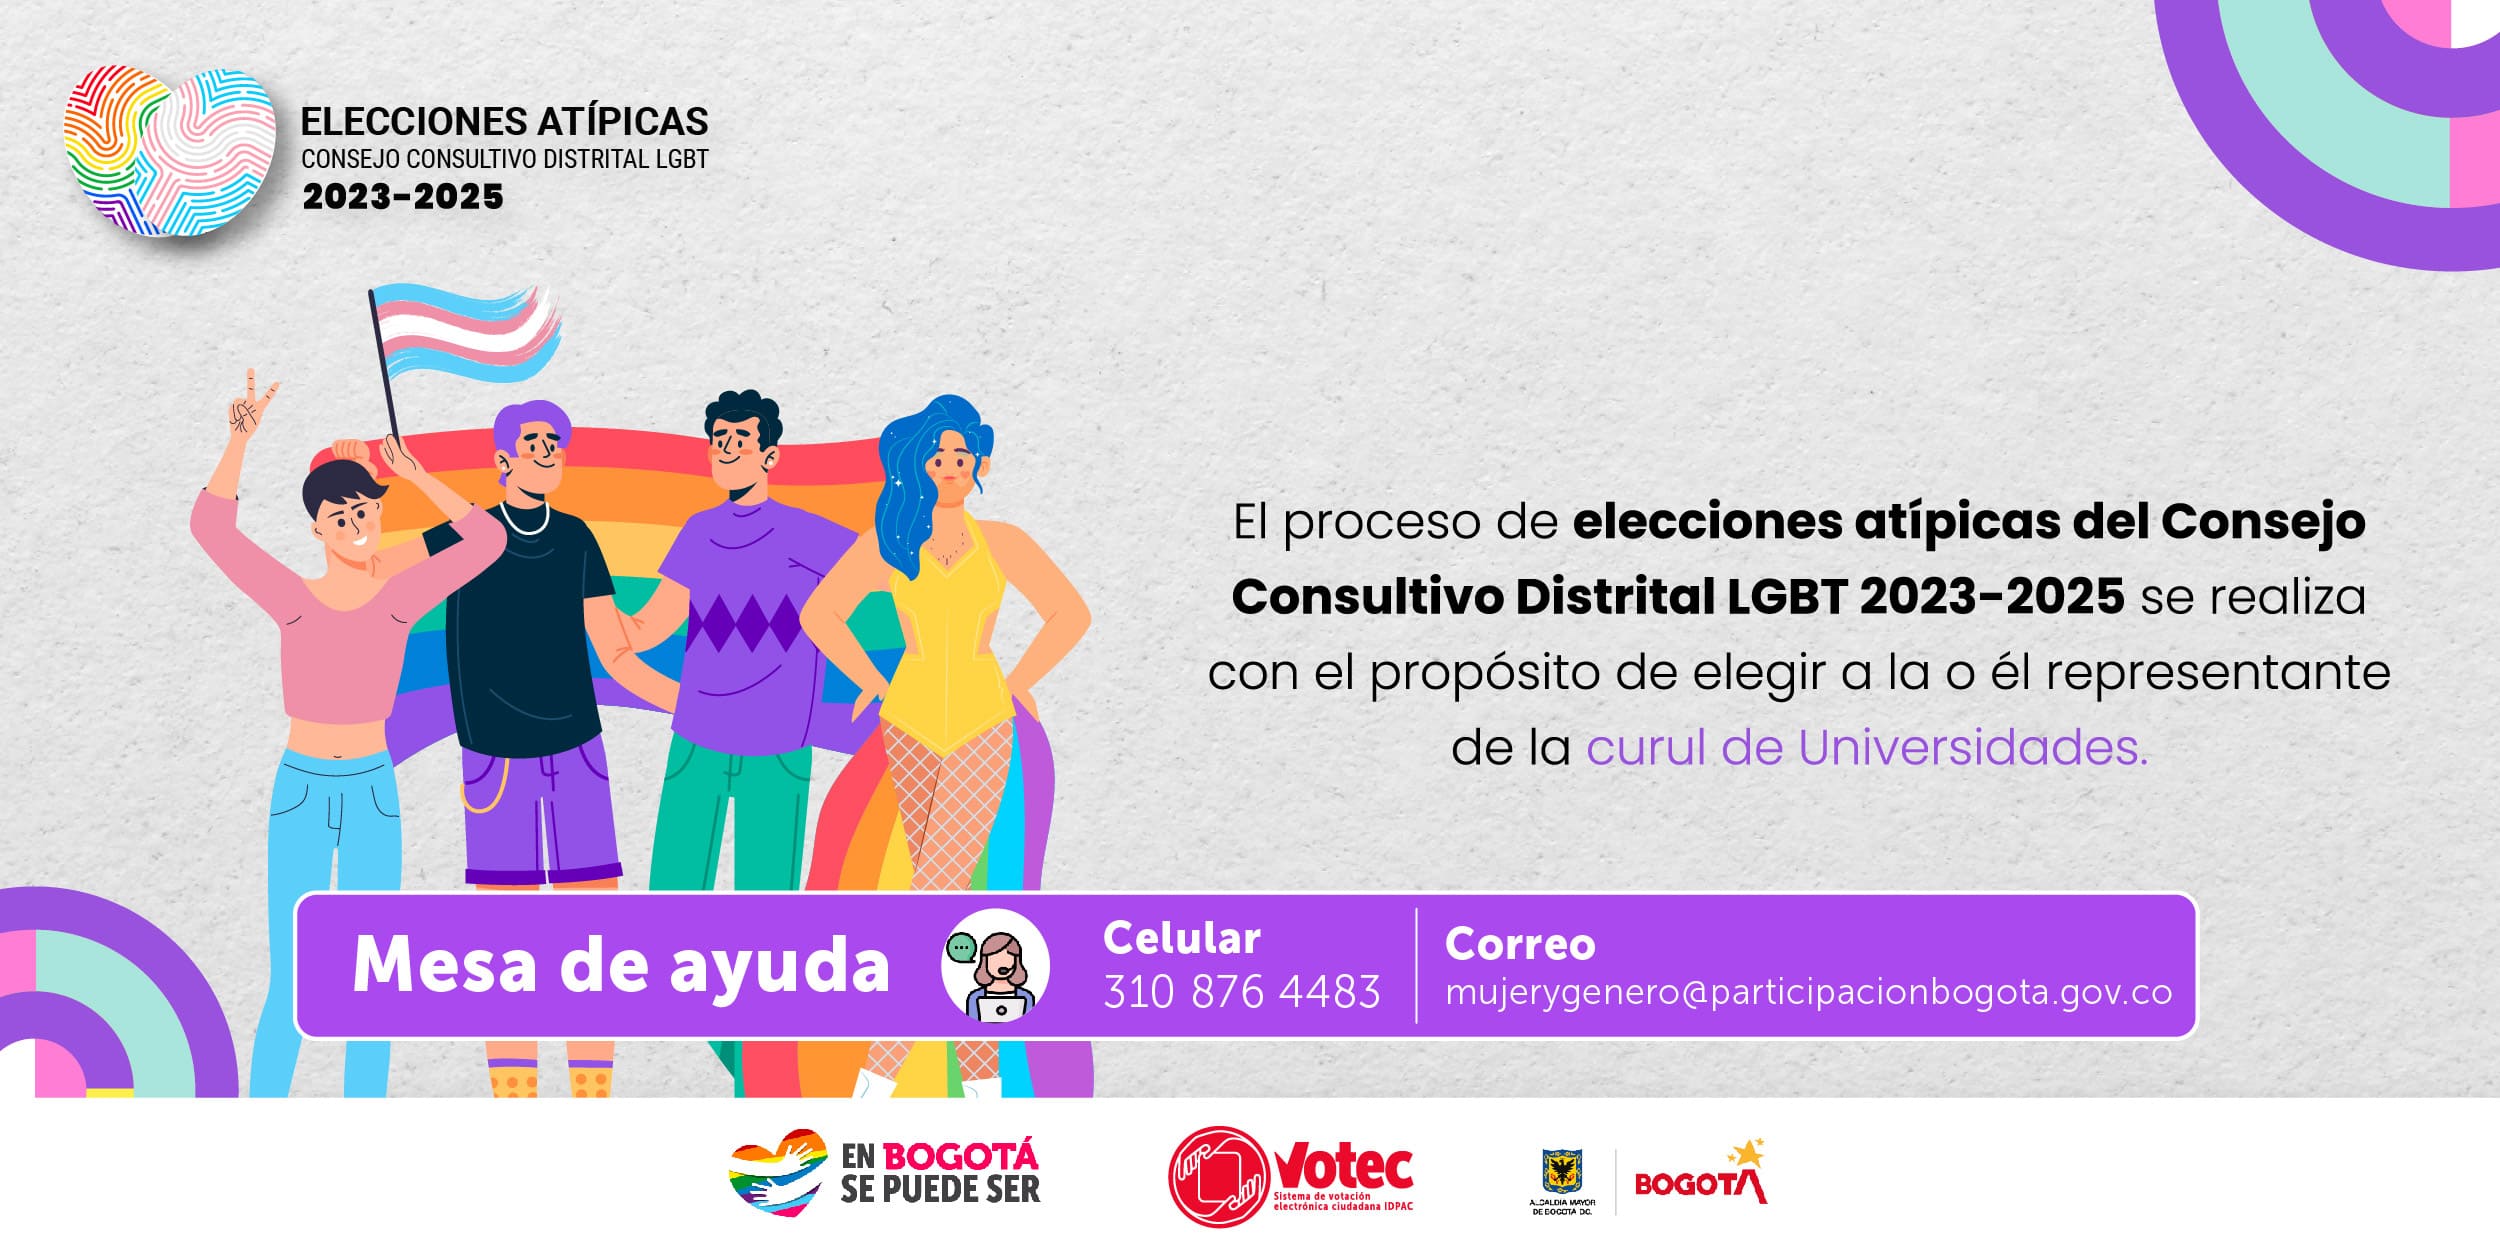 ELECCIONES ATÍPICAS CONSEJO CONSULTIVO DISTRITAL LGBT 2023-2025